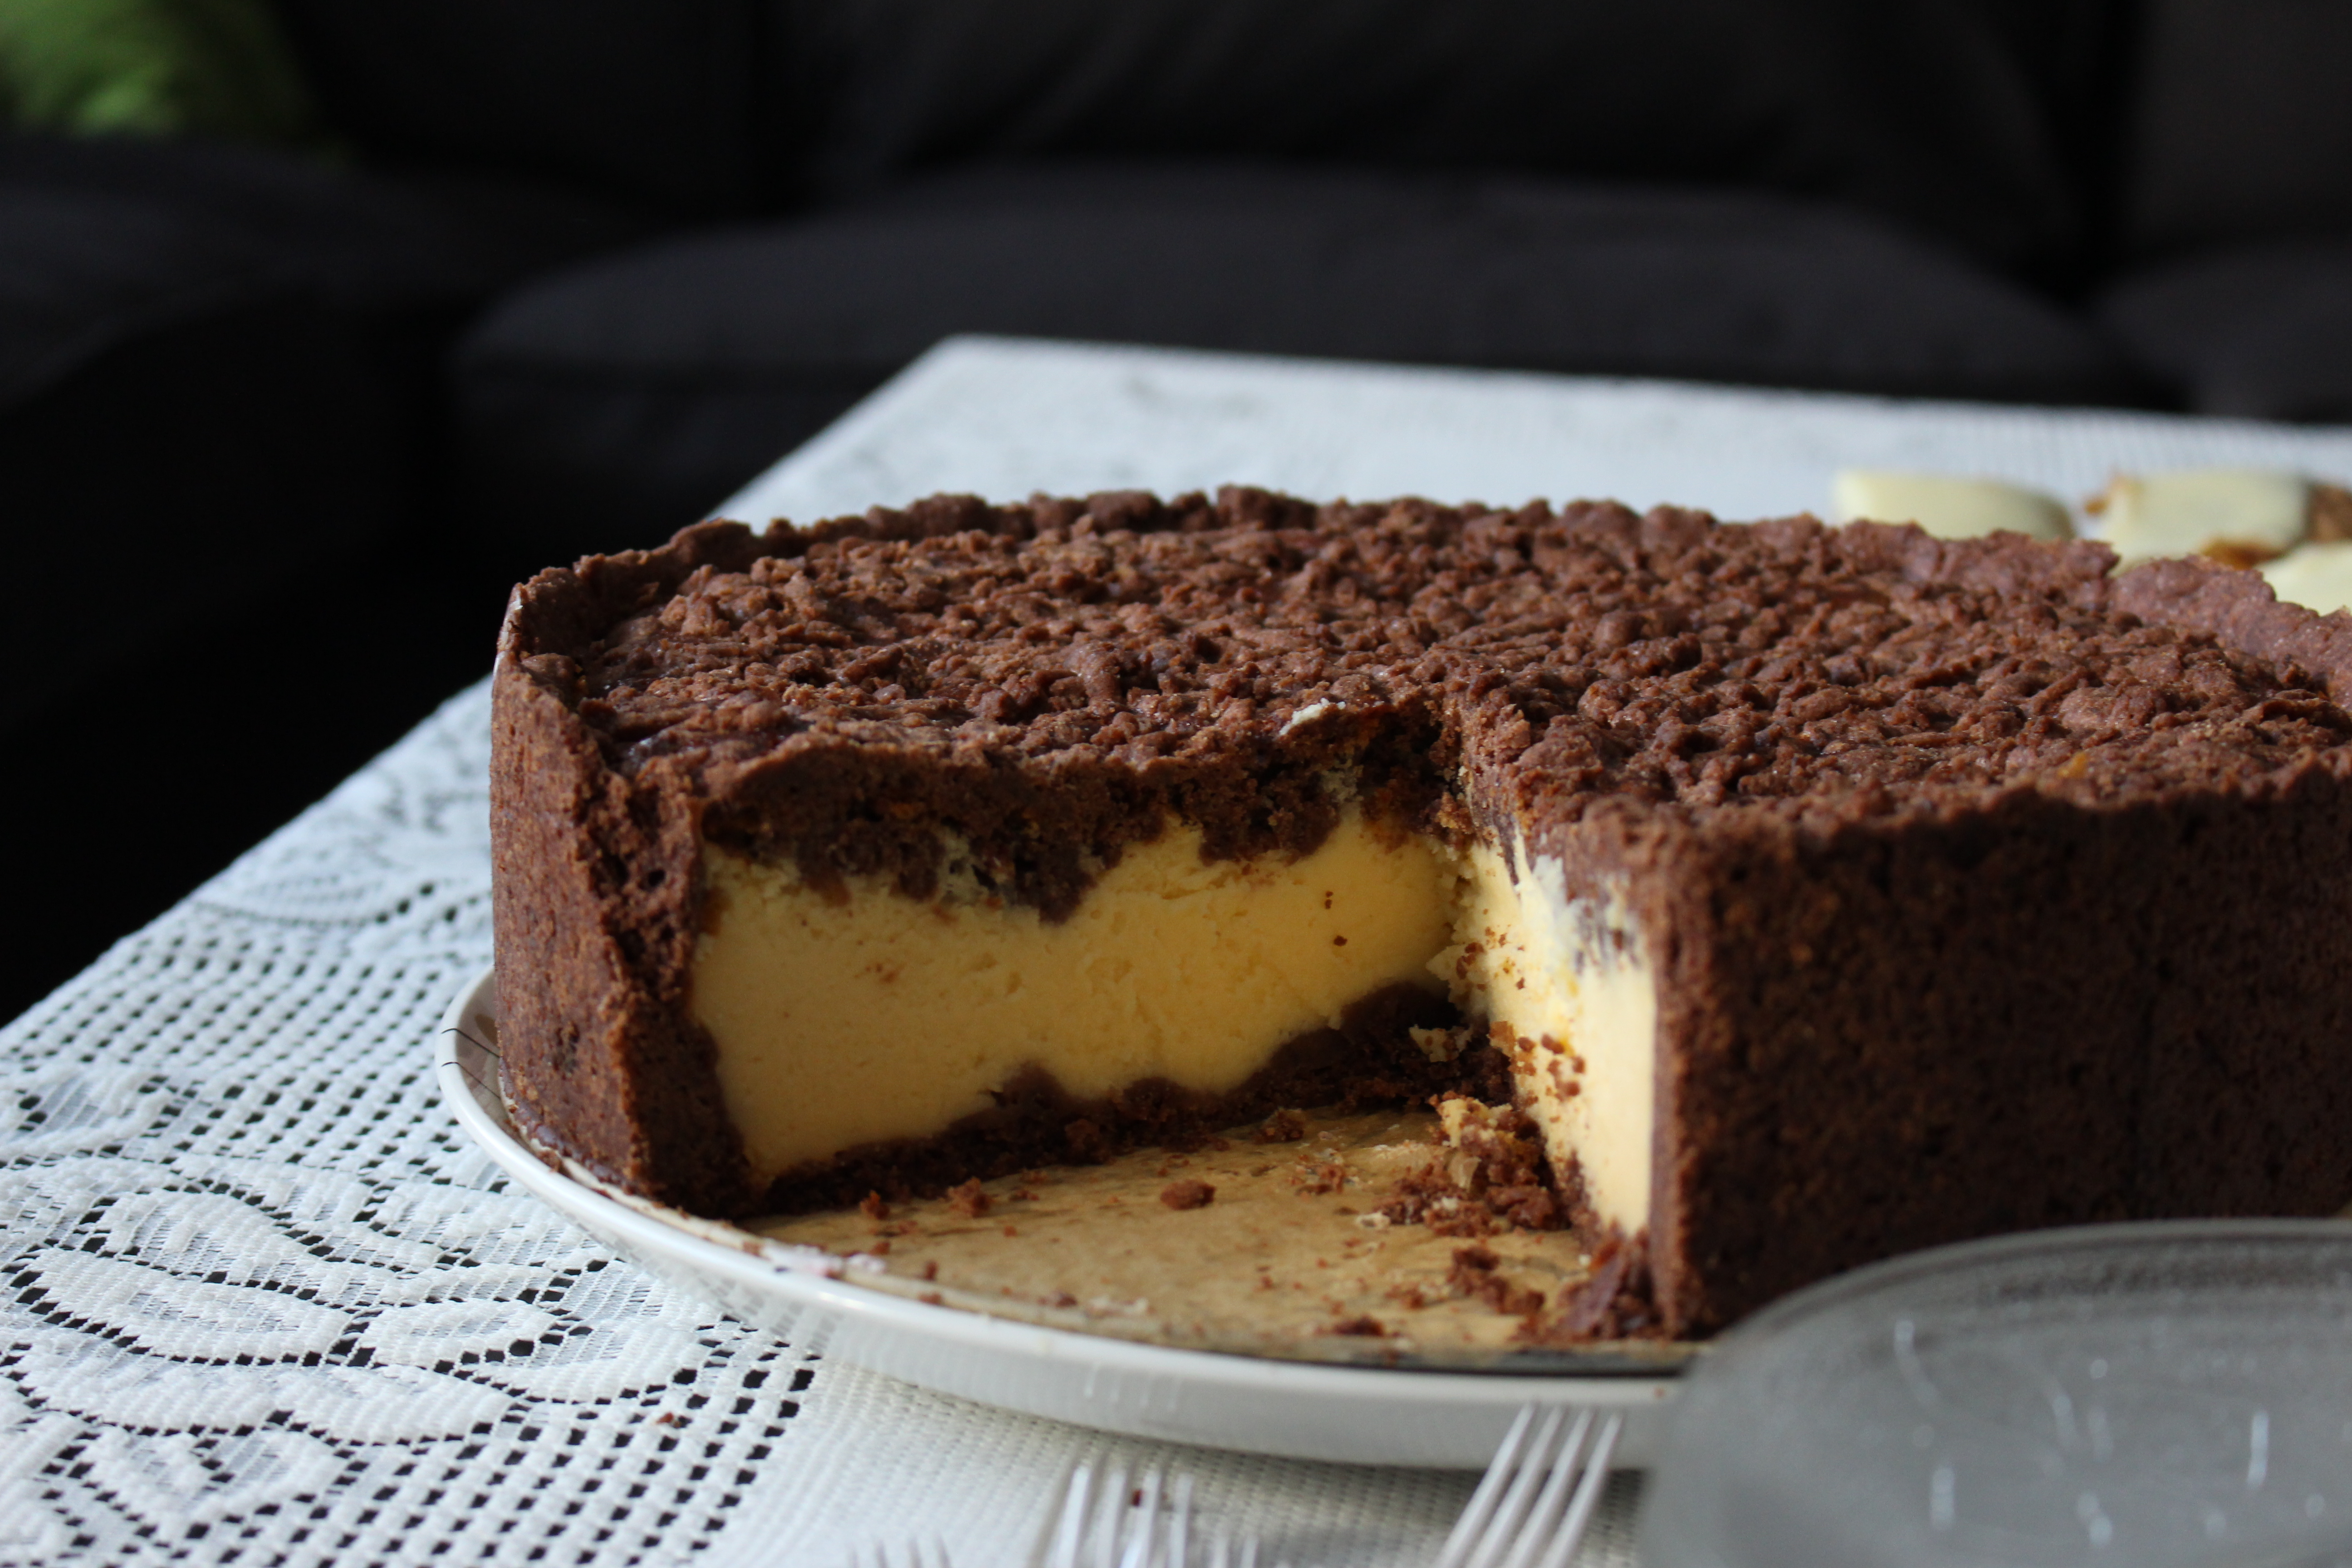 Cheesecake-cocco-e-nutella